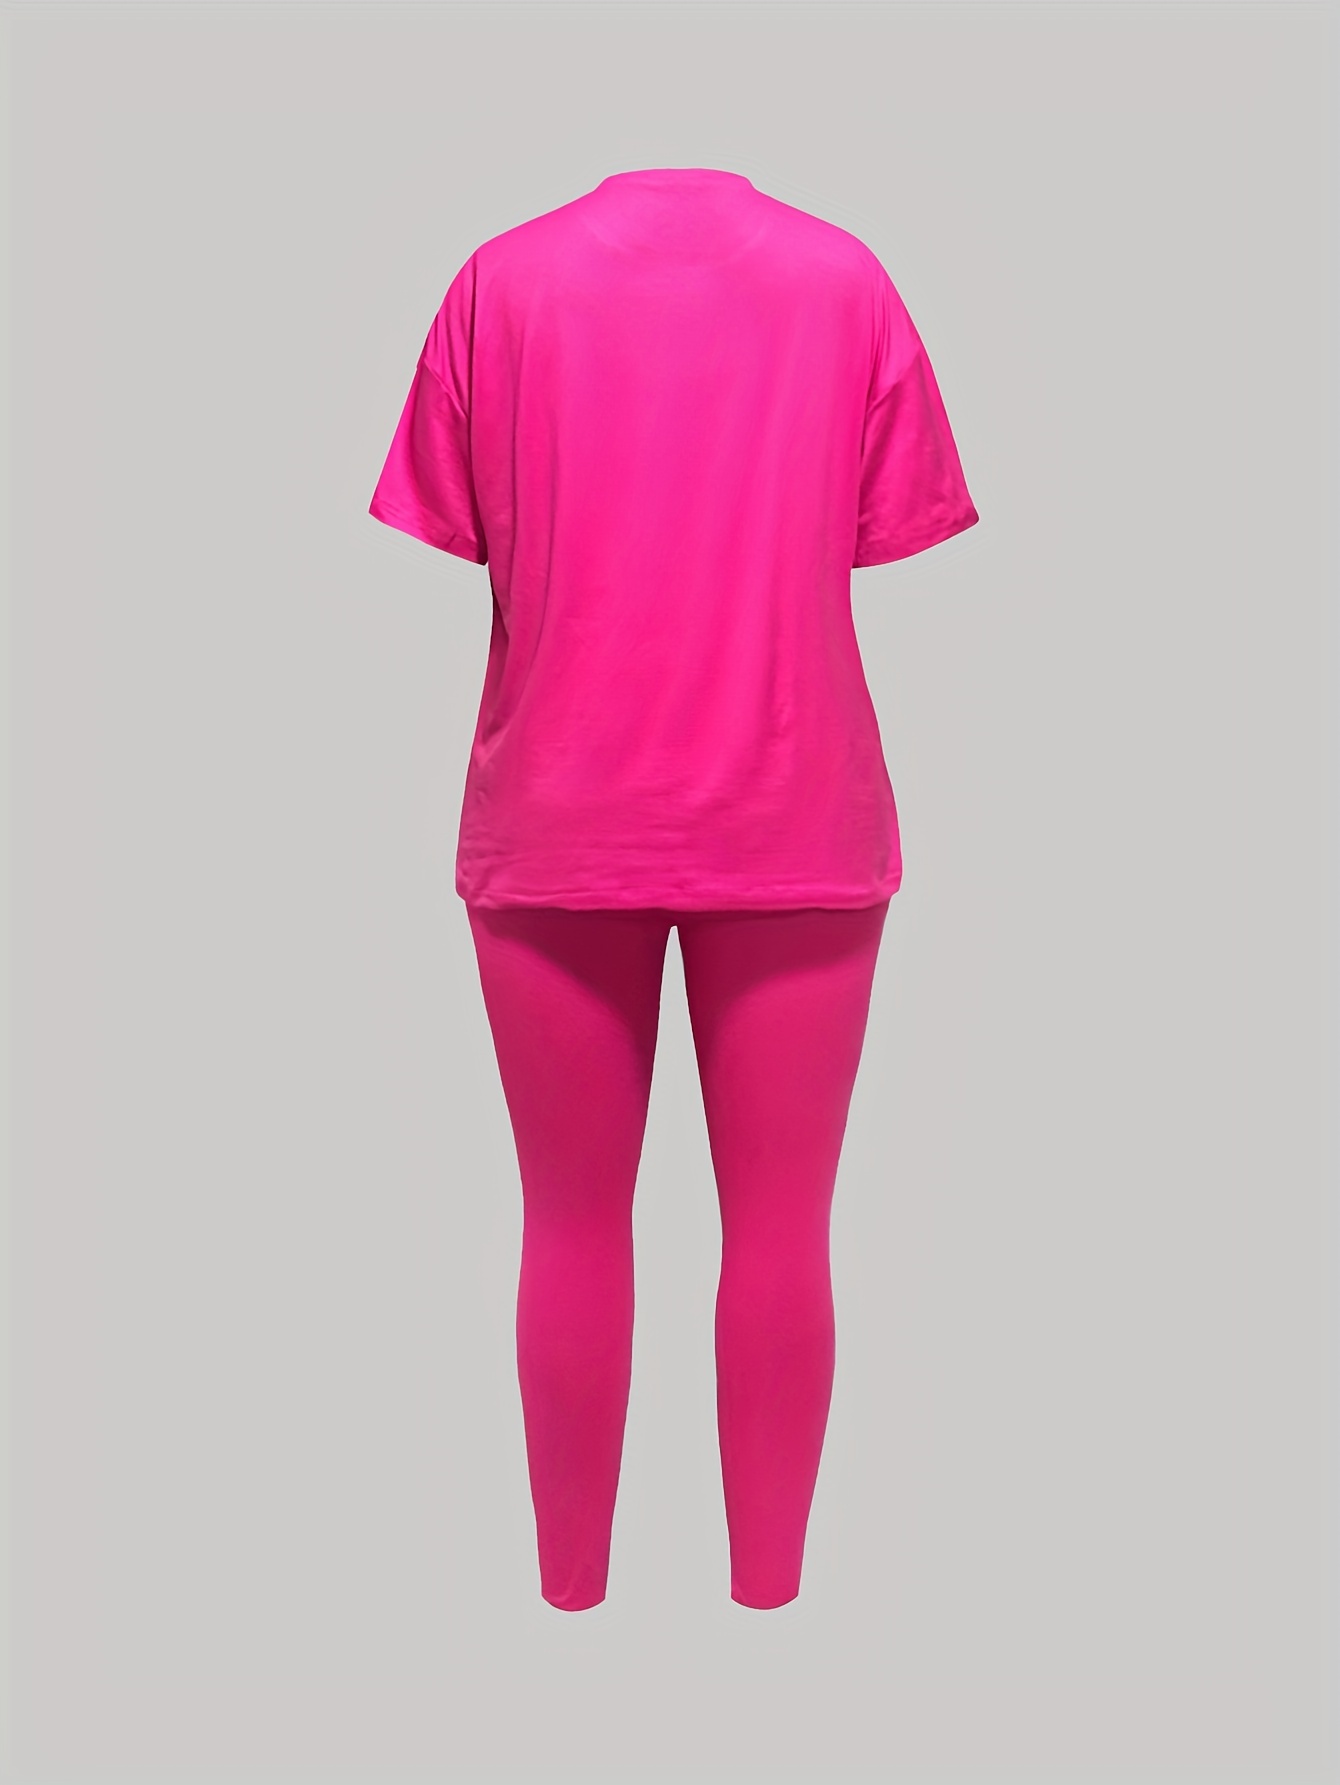 Pink Letter Tracksuit Bra Set Short Pants Two Pieces Women